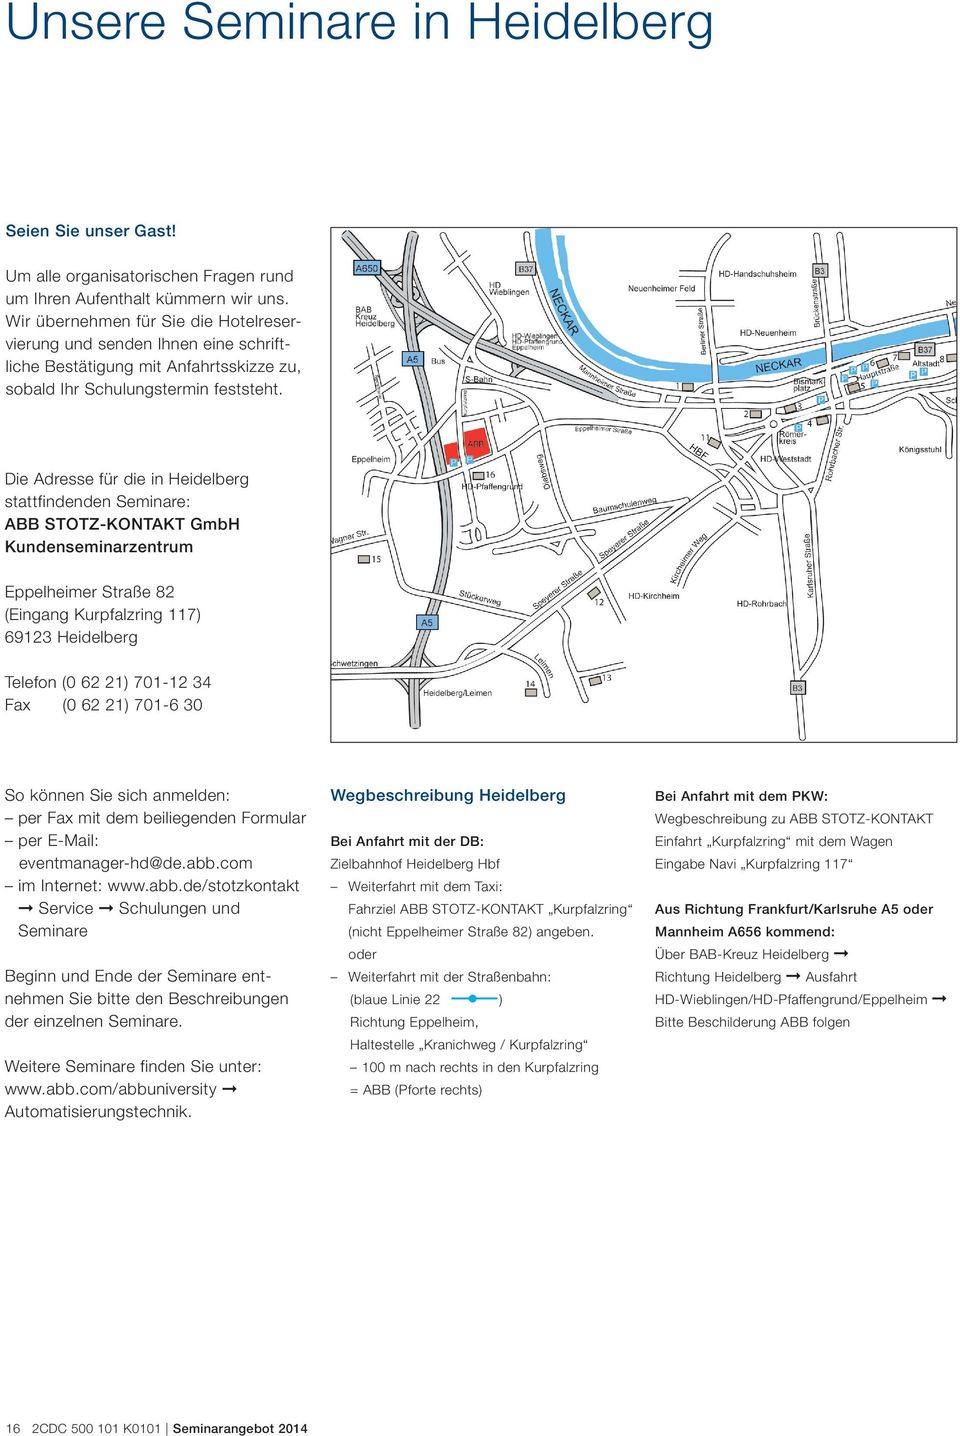 Die Adresse für die in Heidelberg stattfindenden Seminare: ABB STOTZ-KONTAKT GmbH Kundenseminarzentrum Eppelheimer Straße 82 (Eingang Kurpfalzring 117) 69123 Heidelberg Telefon (0 62 21) 701-12 34